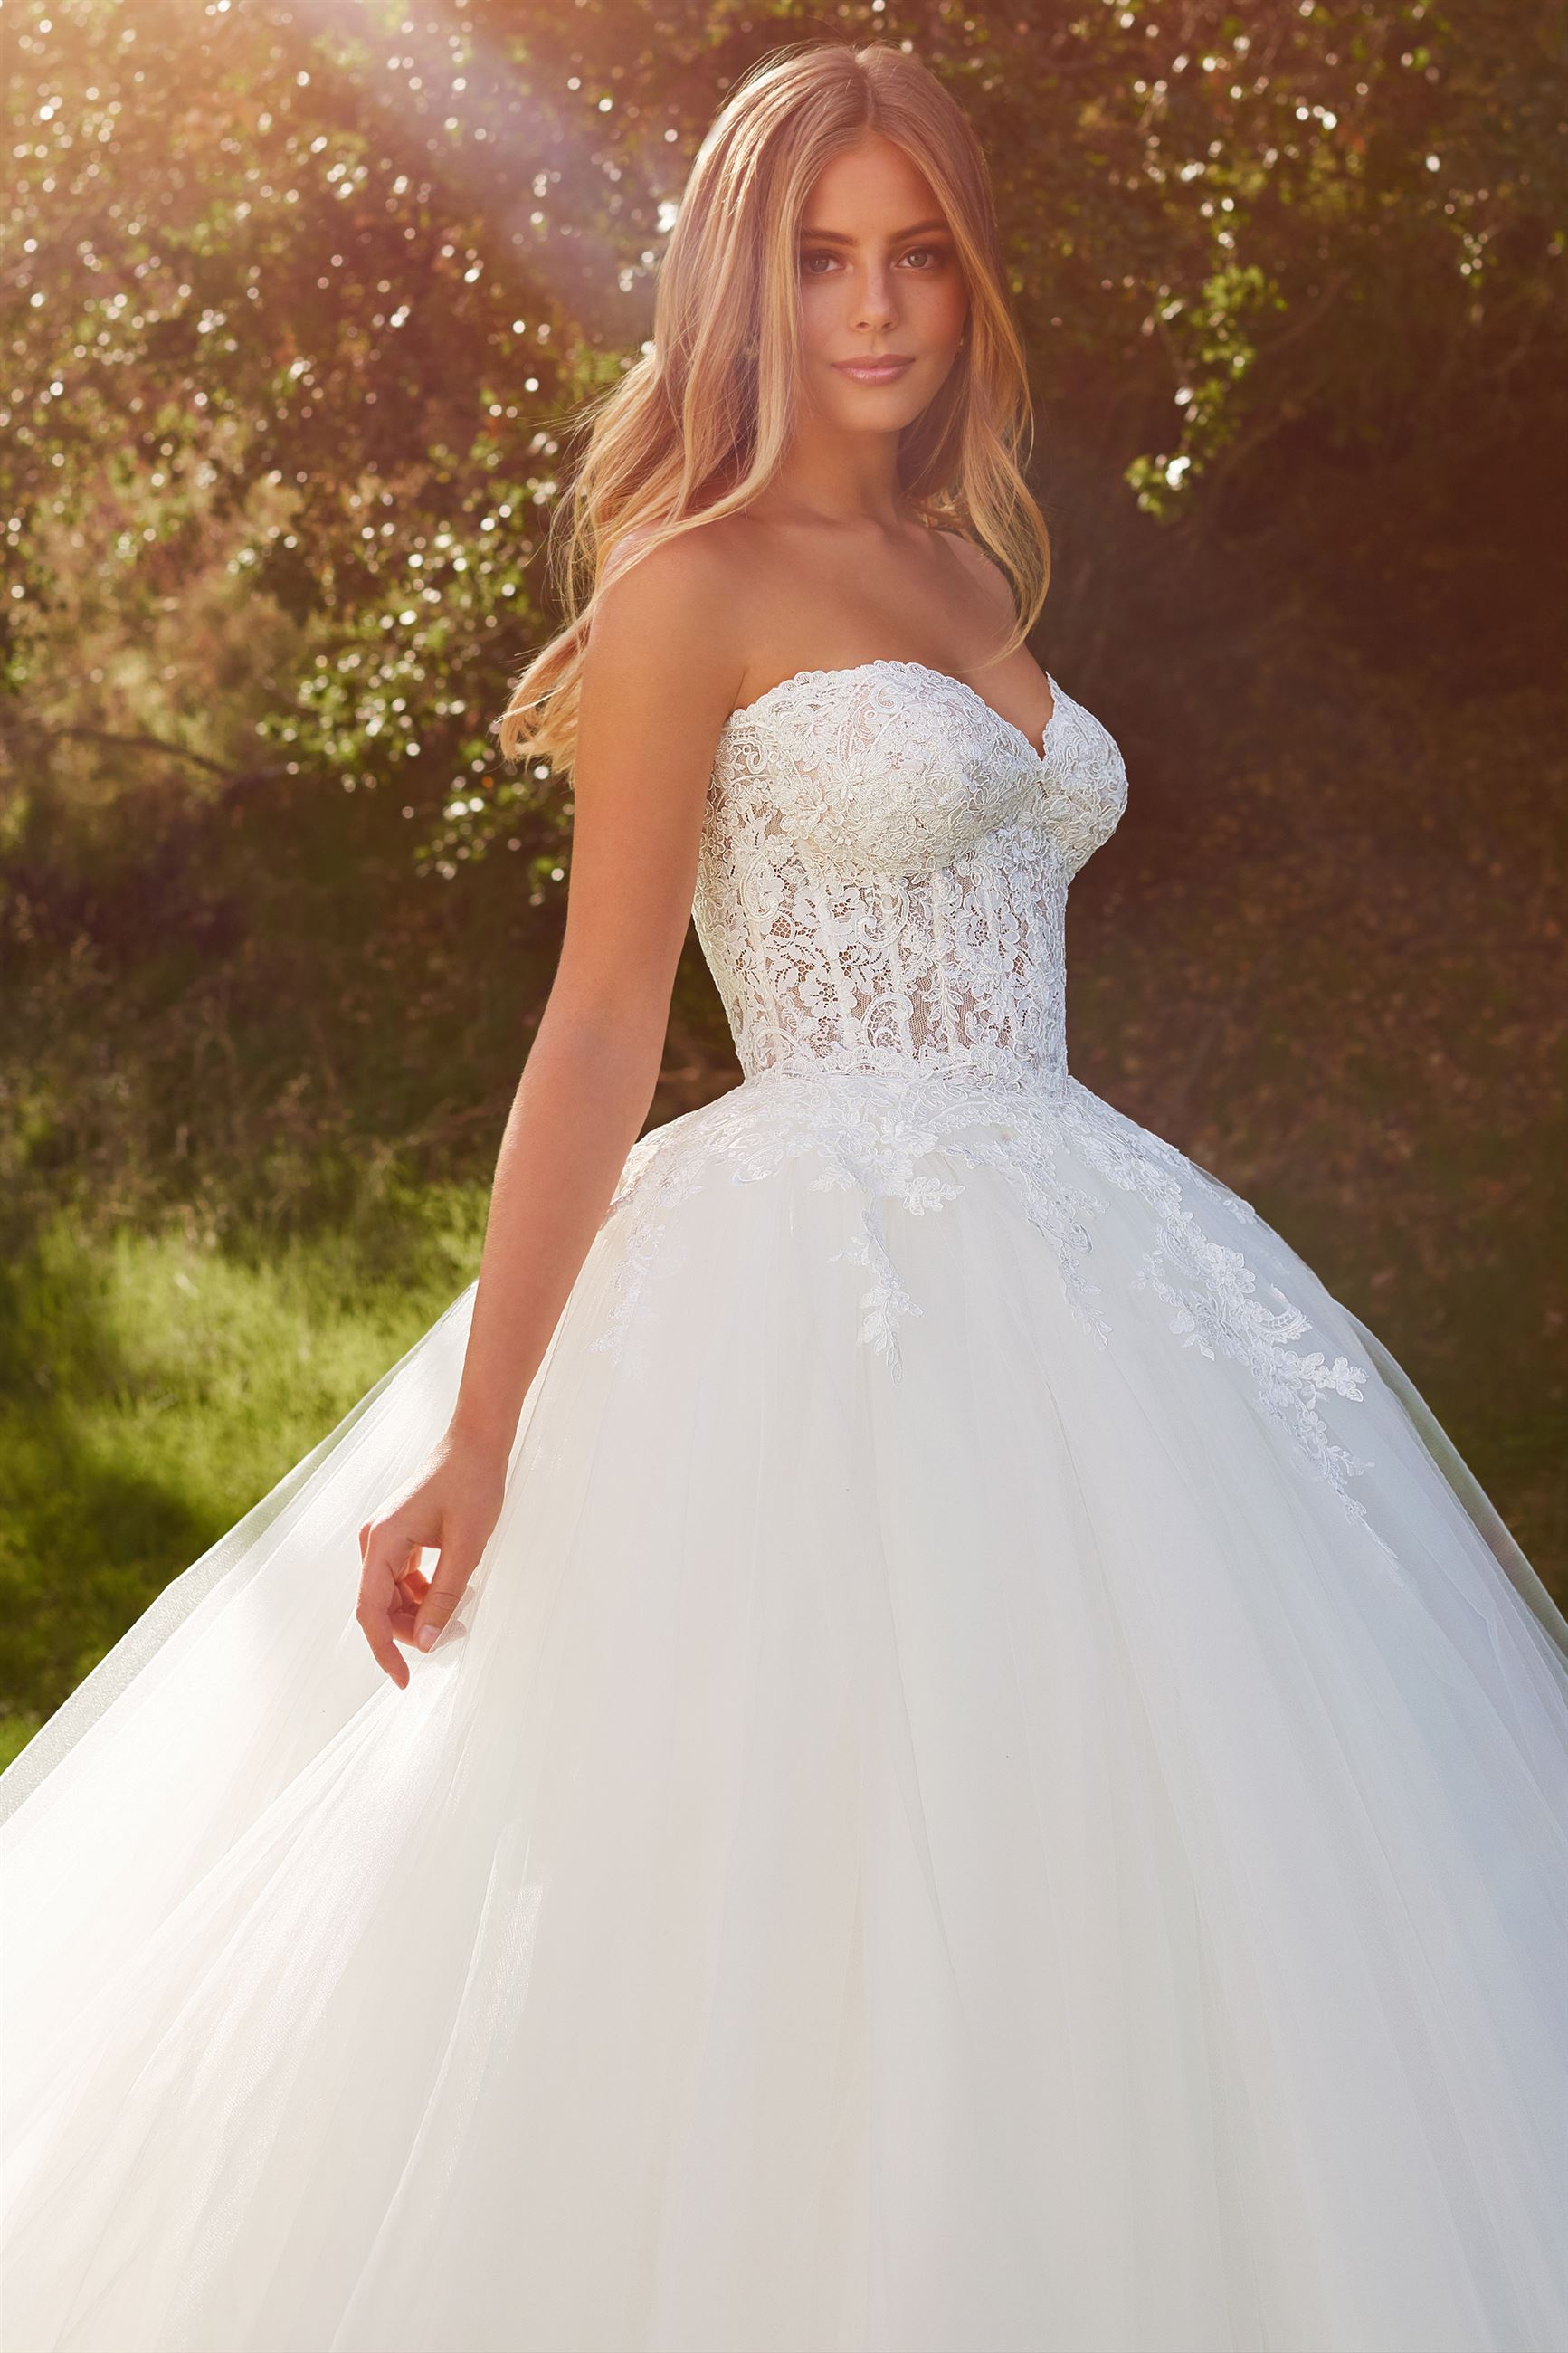 Blonde bride wearing strapless ball gown wedding dress